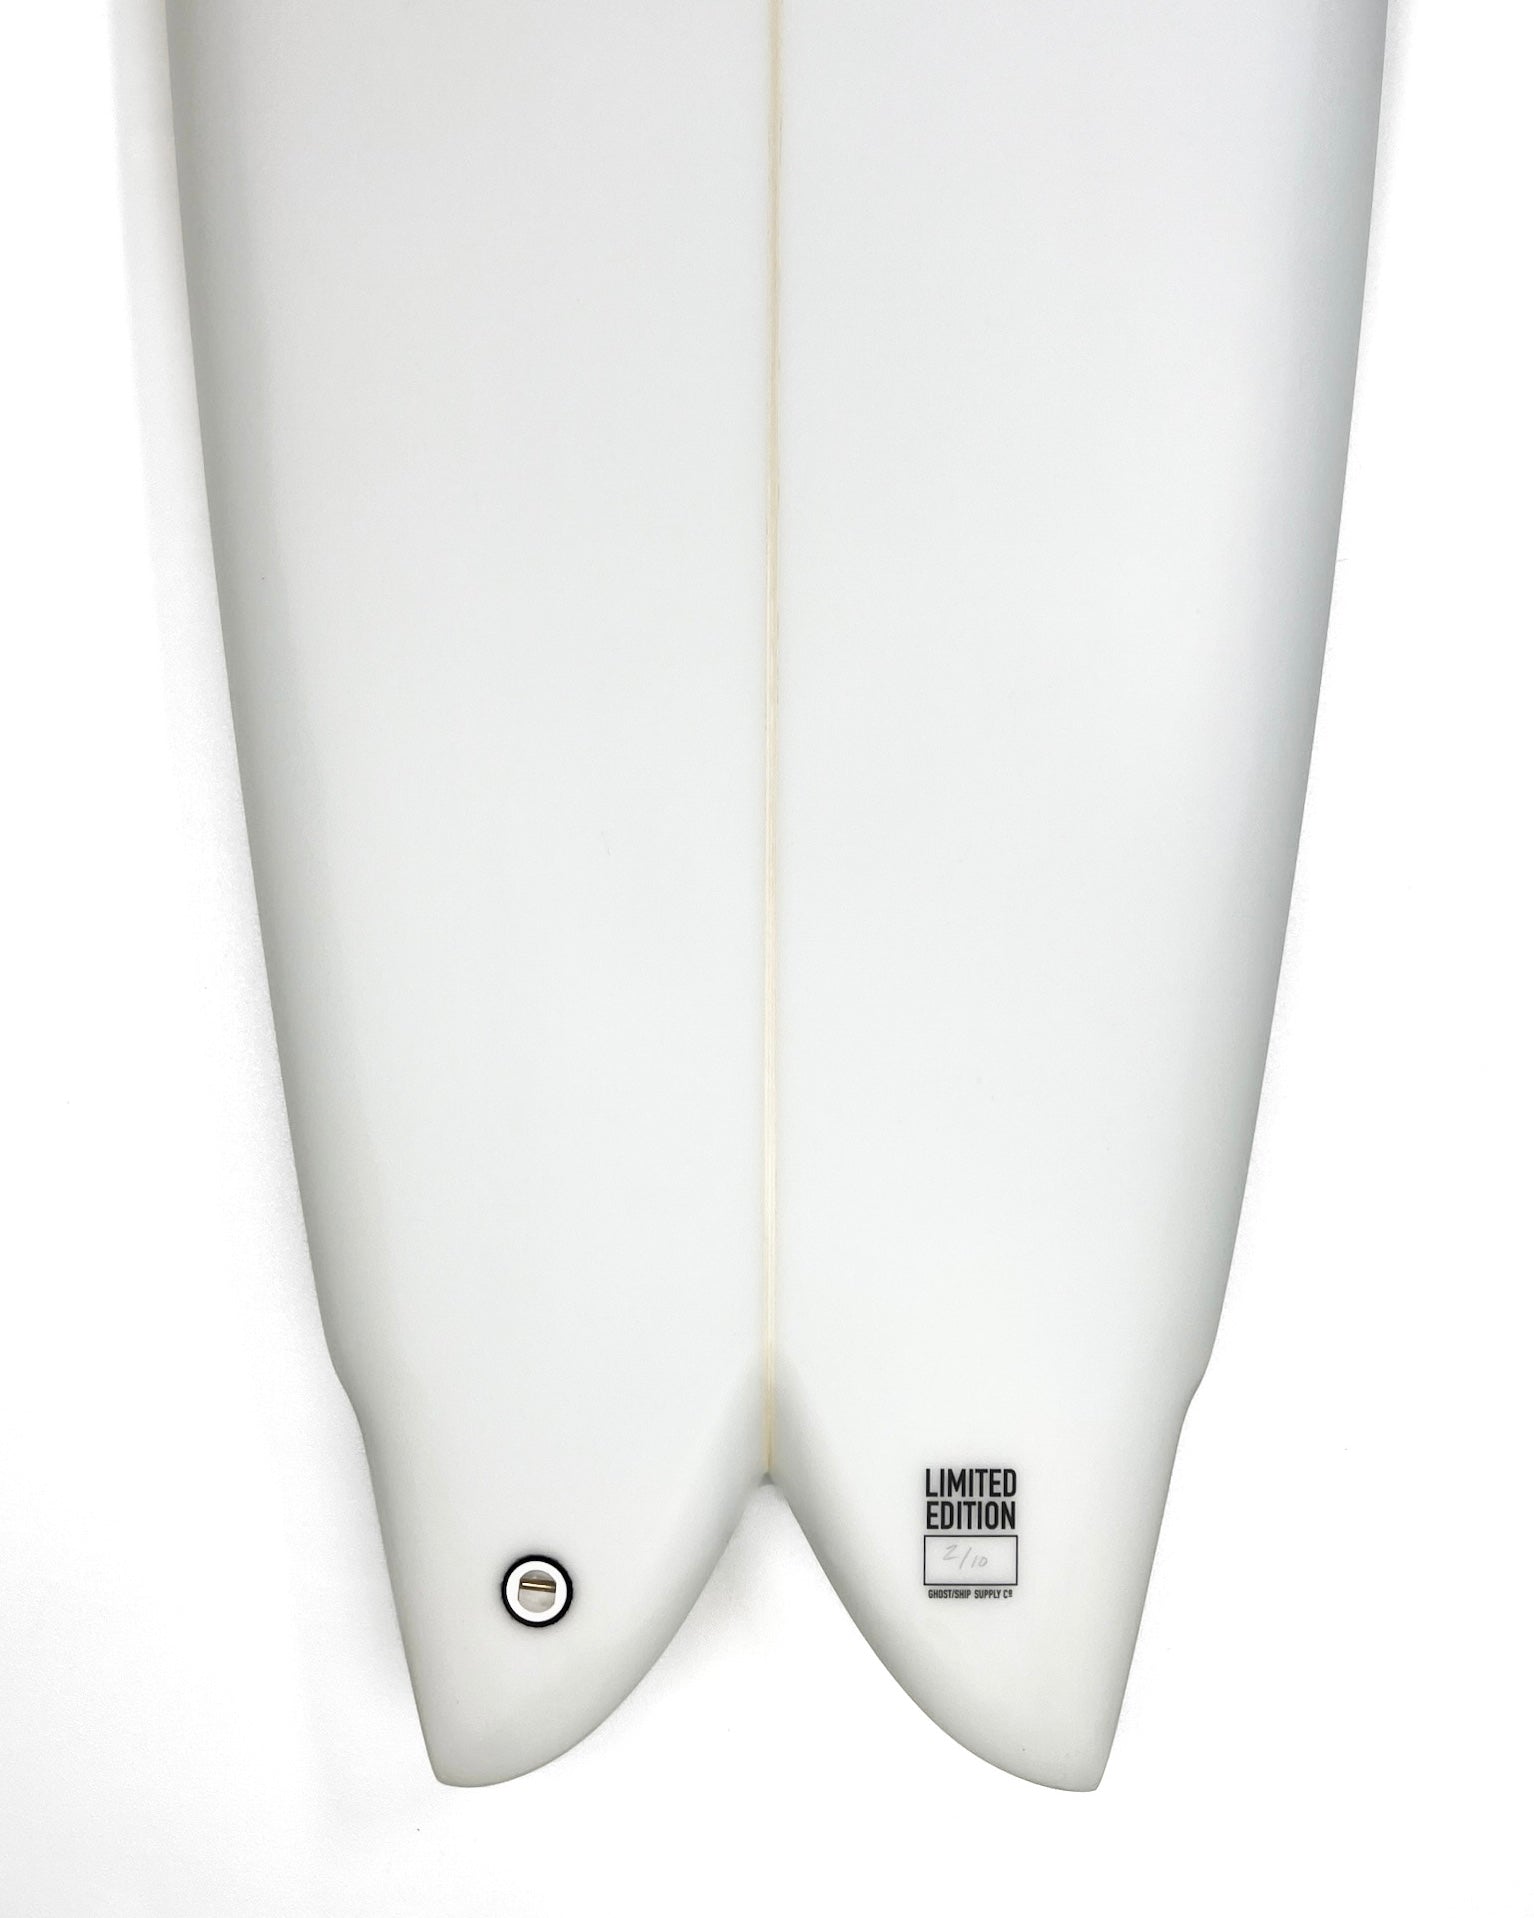 Ghost Ship x Josh Peterson Rorschach Fish Surfboard 5’8” - GHOSTSHIP.Supply